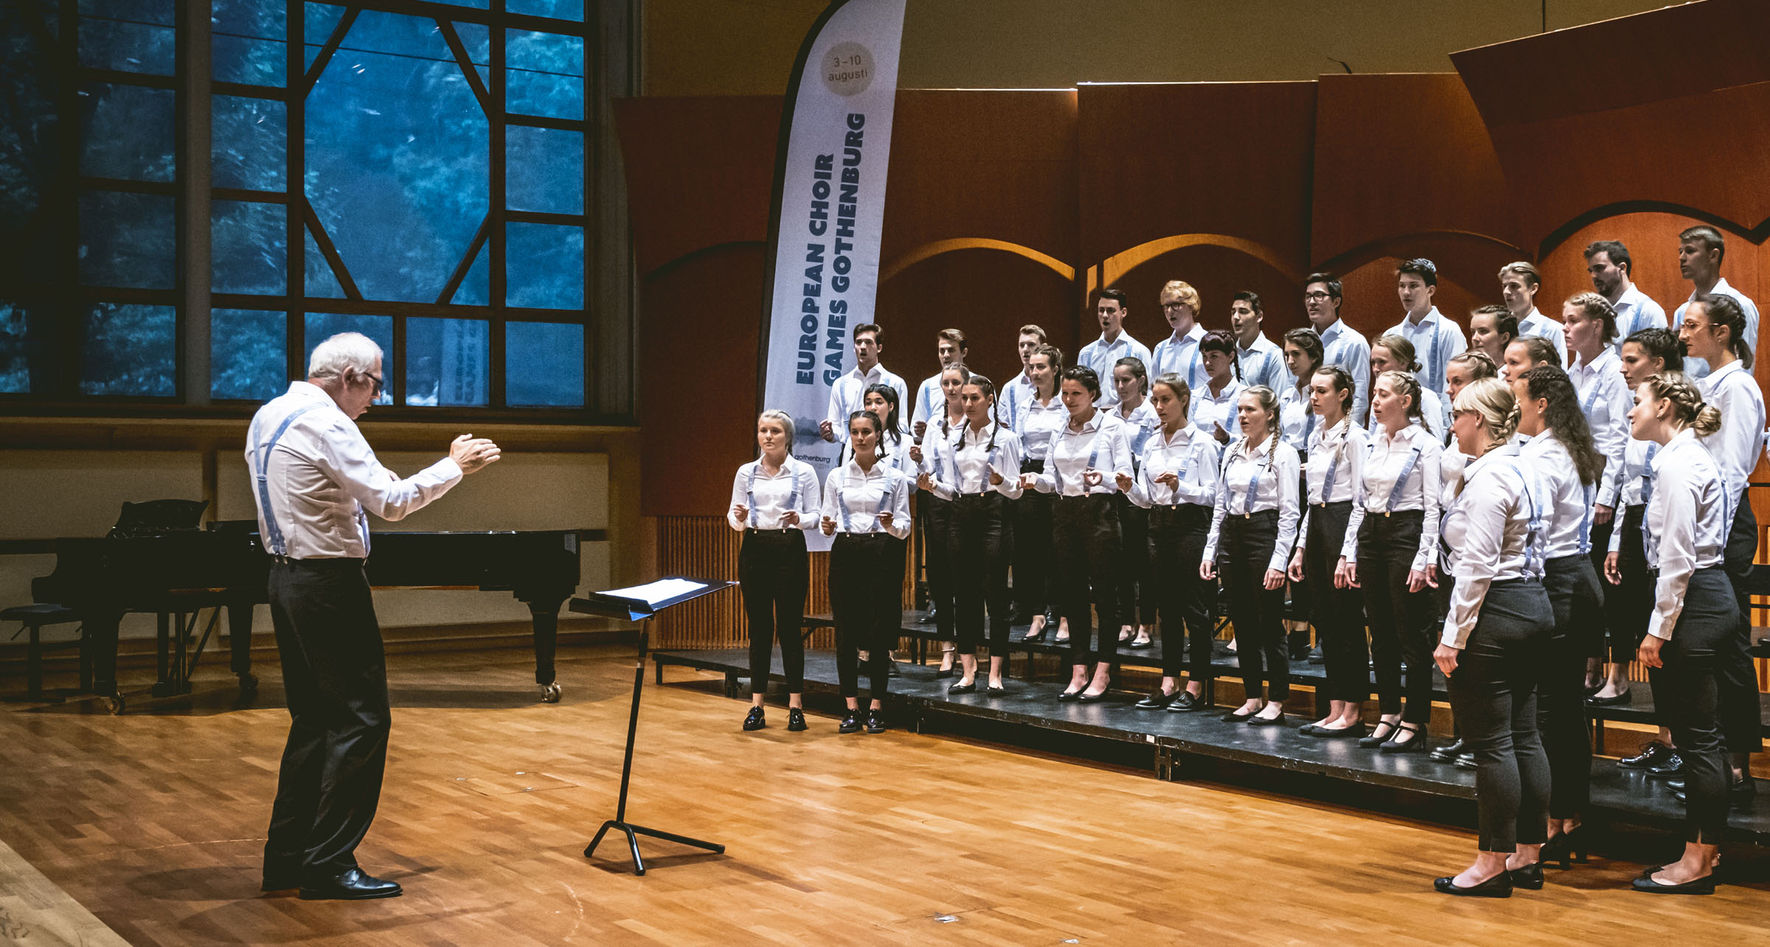 Bündner Jugendchor (Schweiz) auf der Wettbewerbsbühne der European Choir Games in 2019 © Jonas Persson